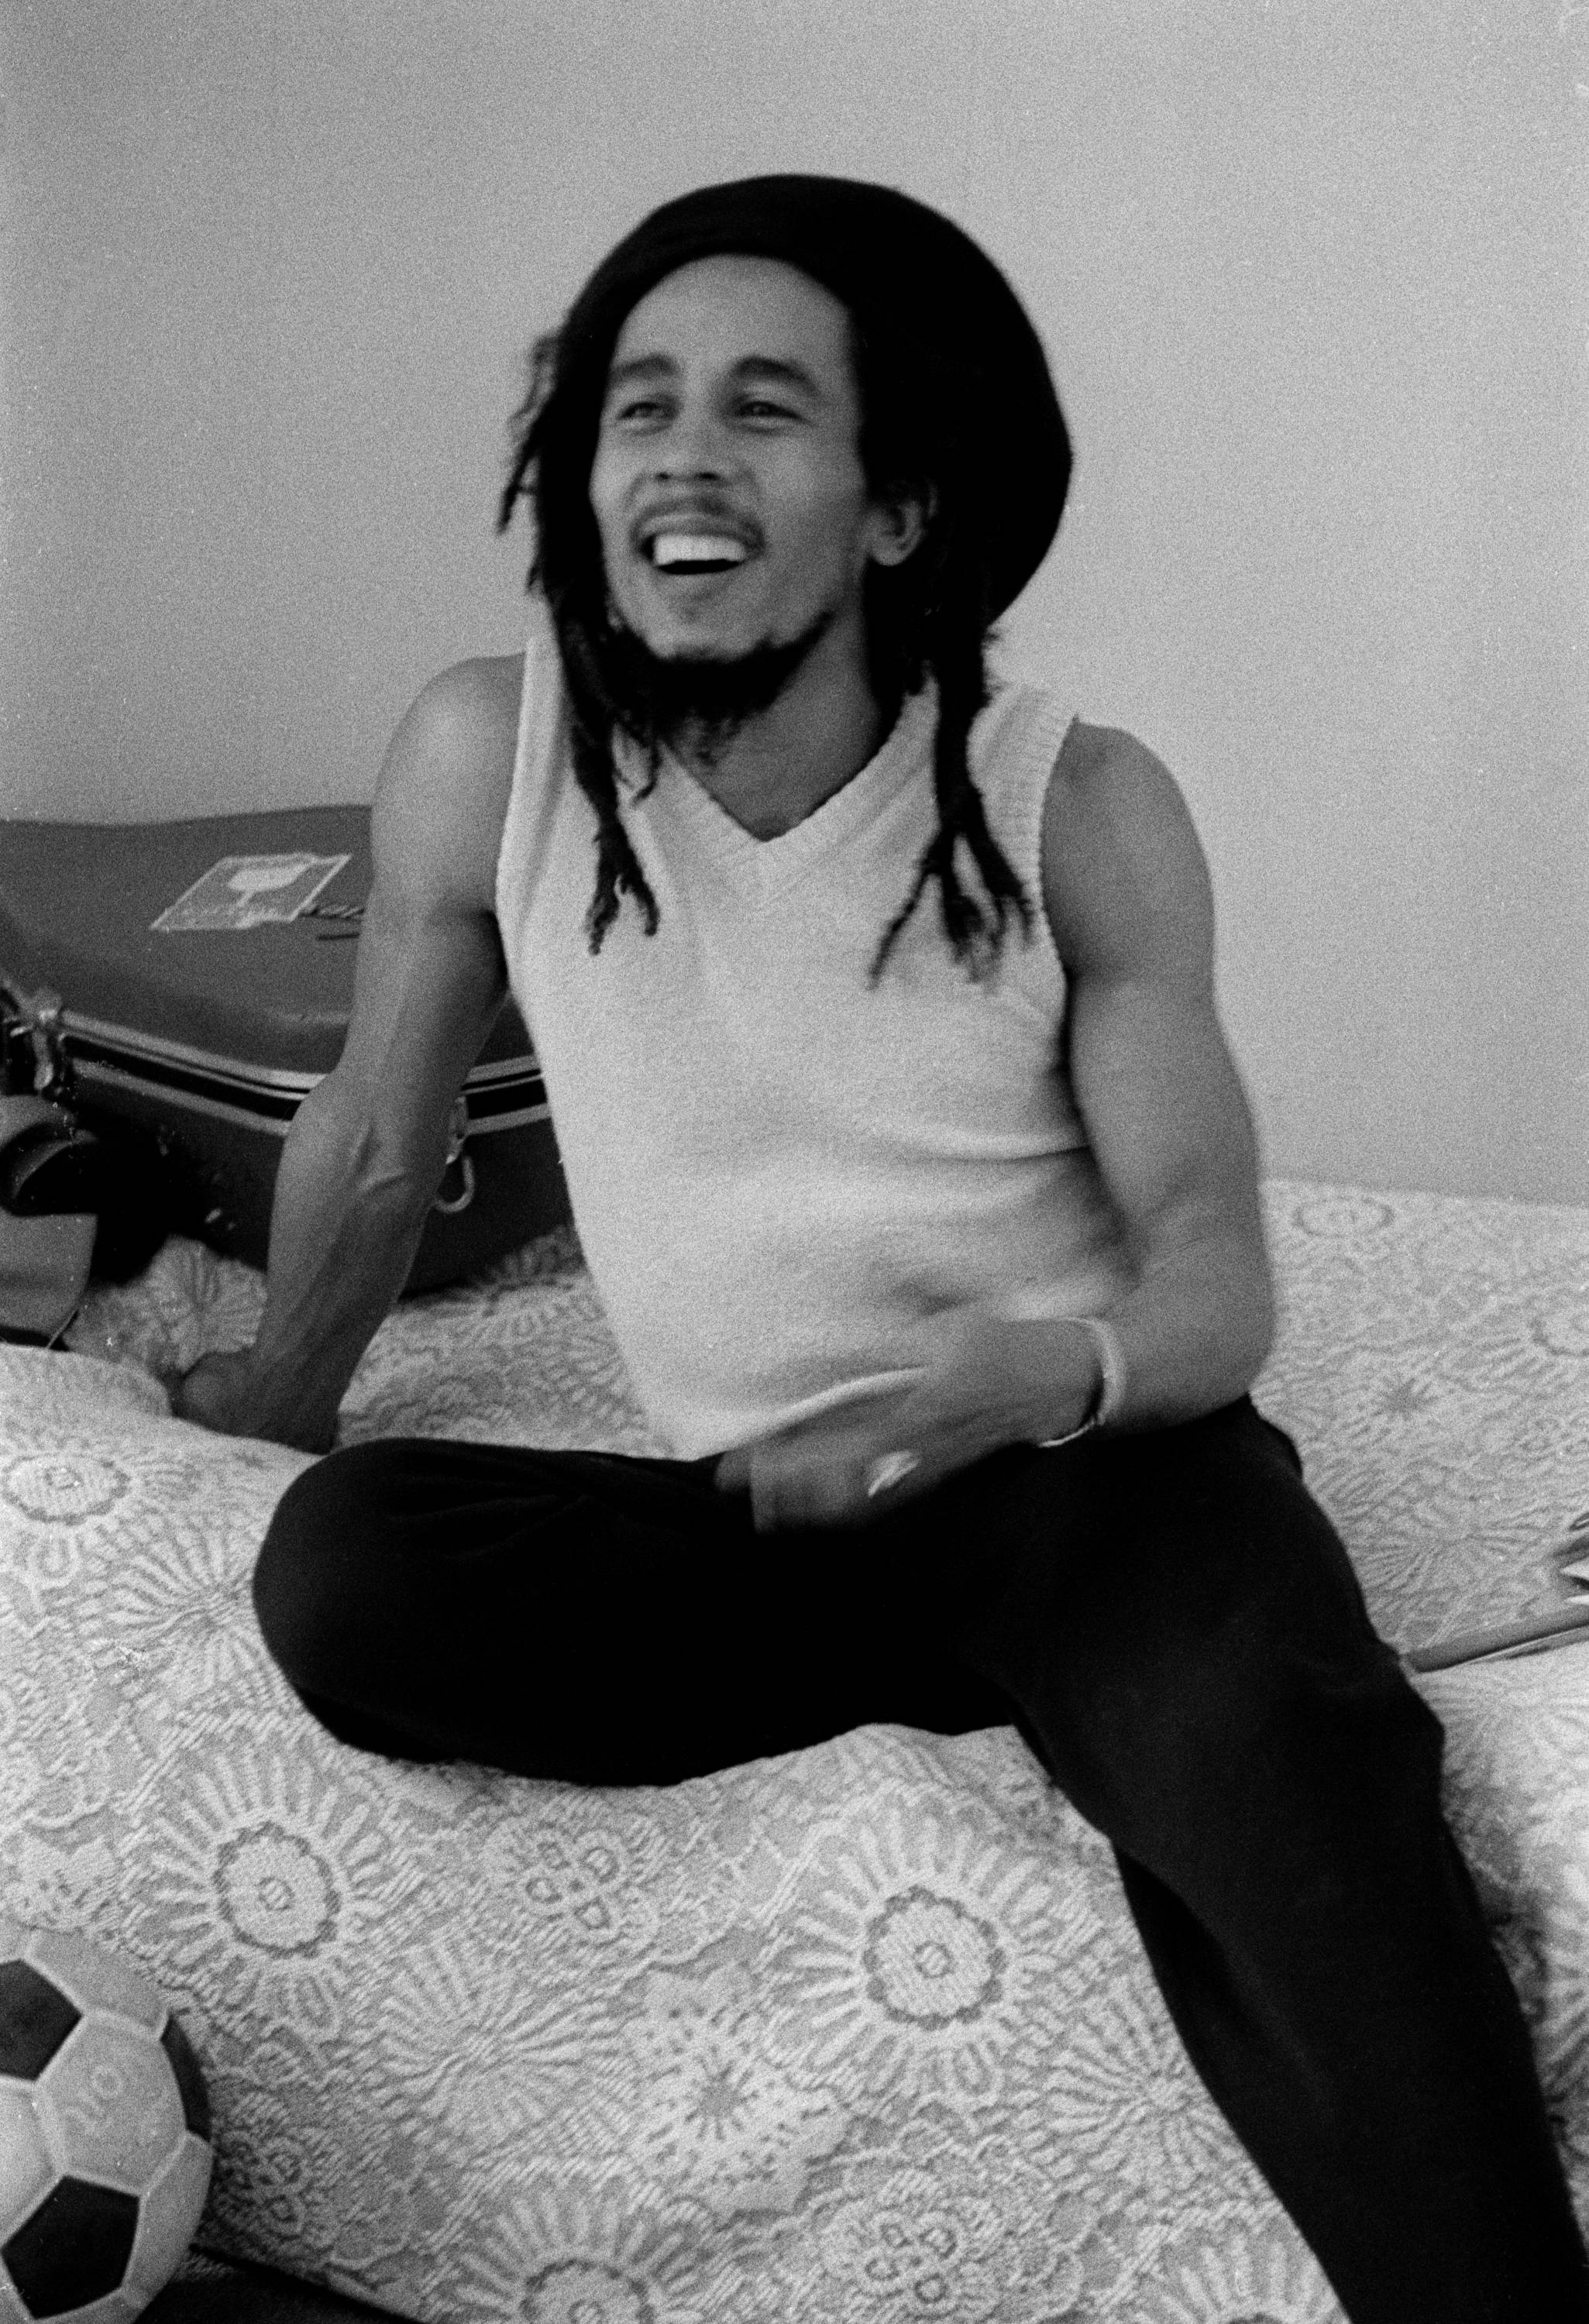 Bob Marley sitting on a bed